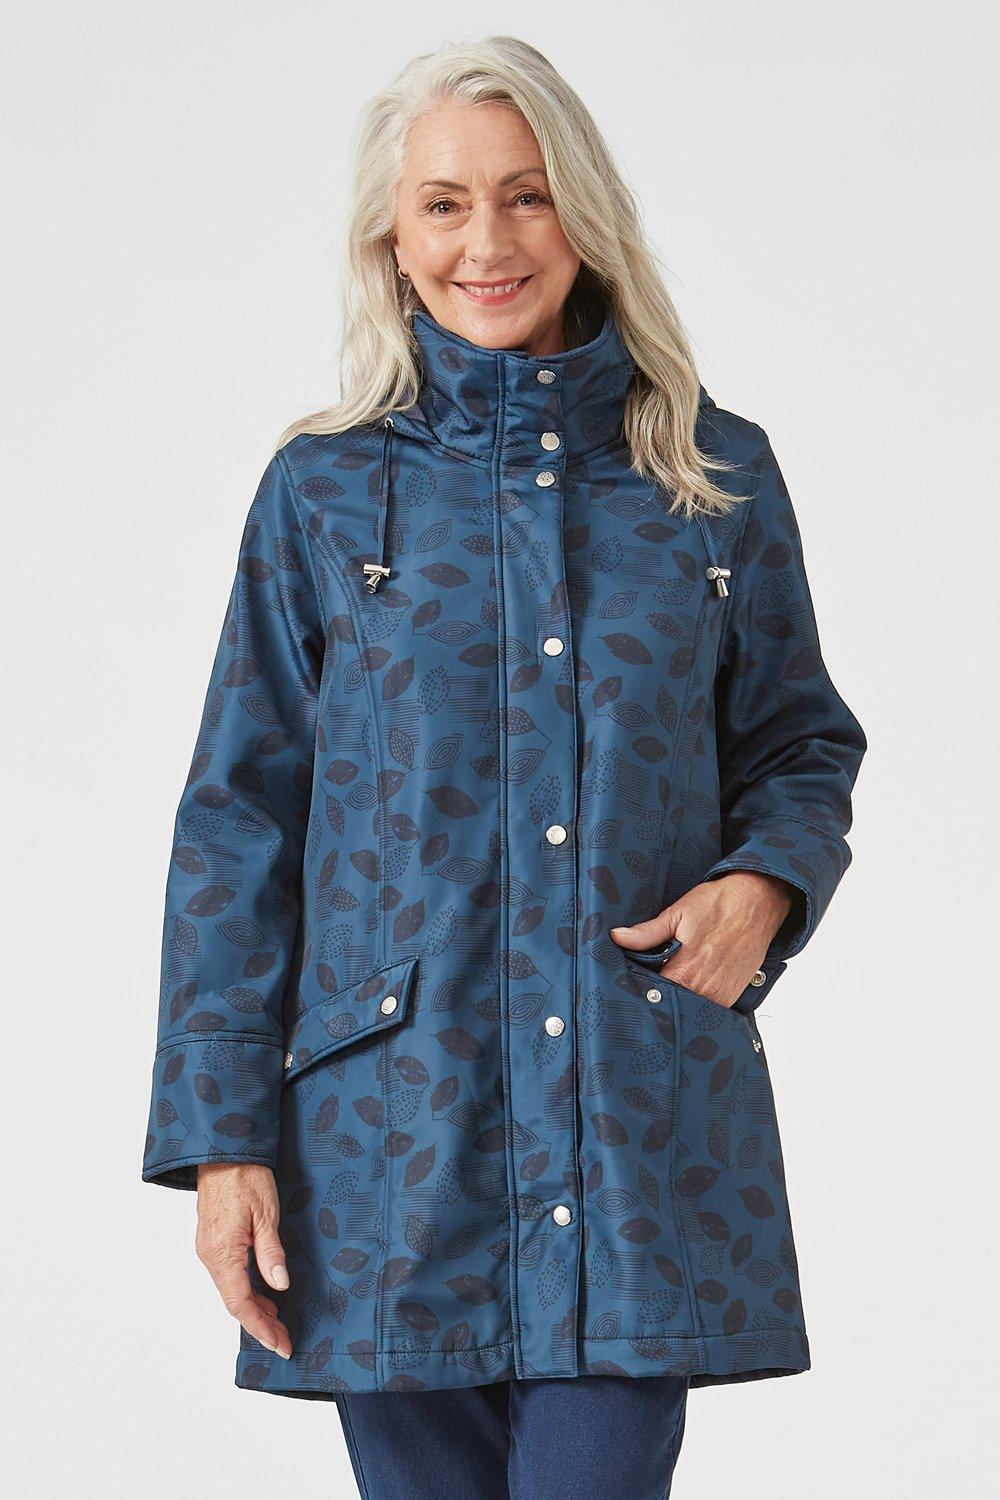 Jackets & Coats | Tonal Print Raincoat | Tigi